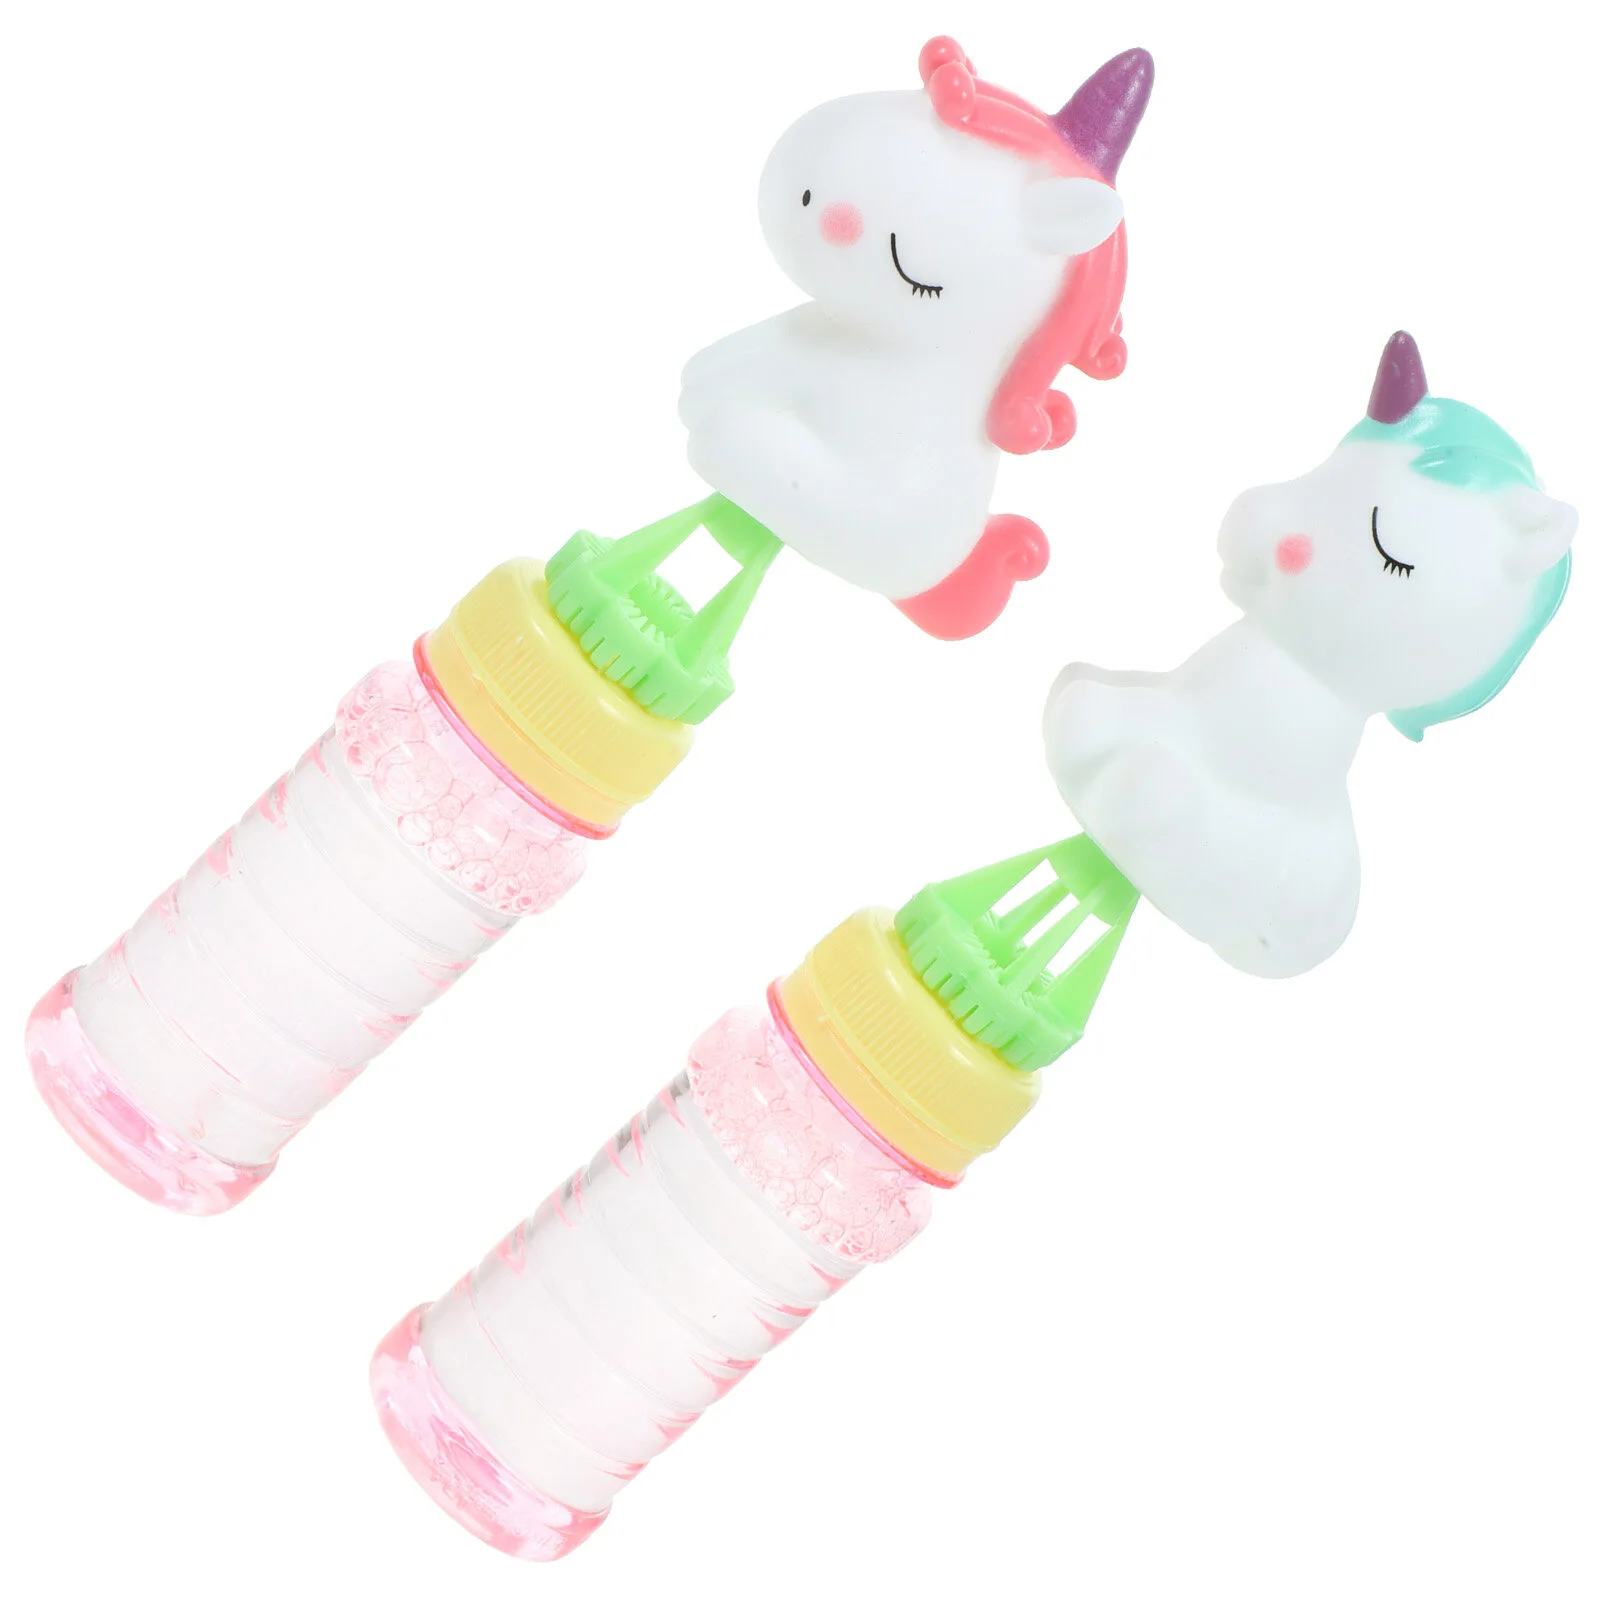 

2 Pcs Blowing Bubble Wand Mini Toys Wands Kids Party Favors Small Bubbles Children Unicorn Design Maker Sticks